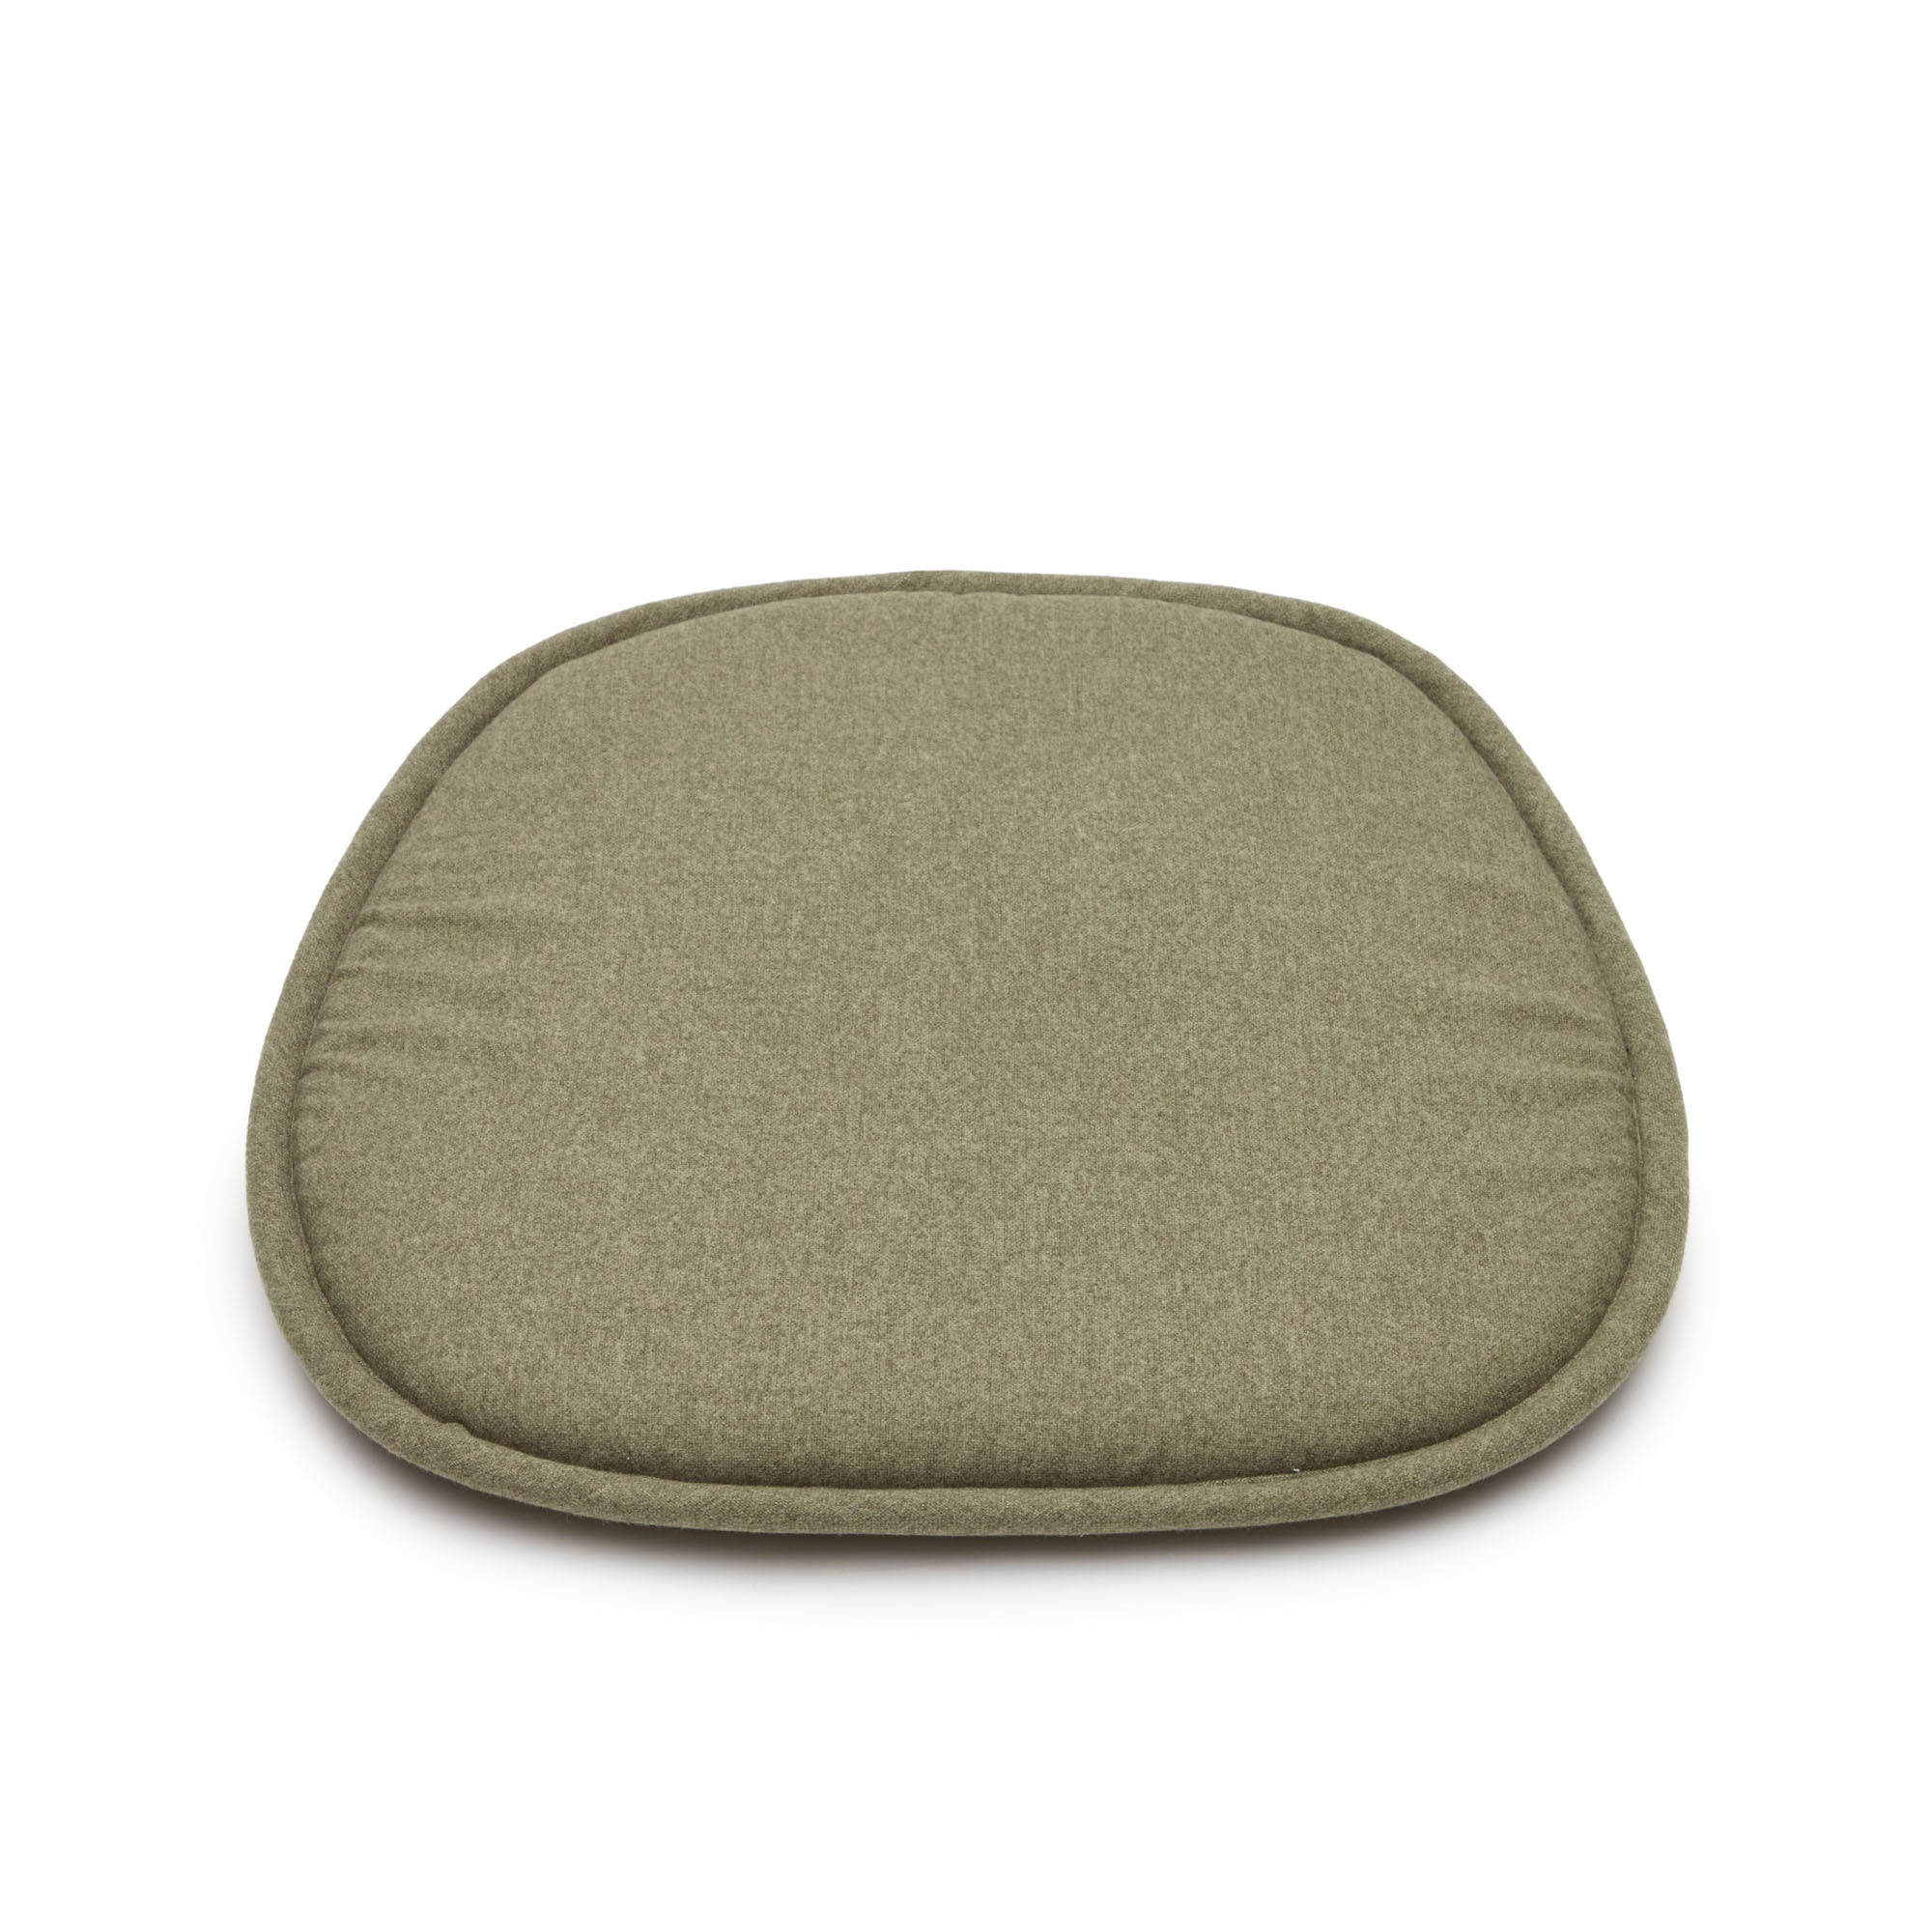 Cushion for Romane chair in green 43 x 43 cm